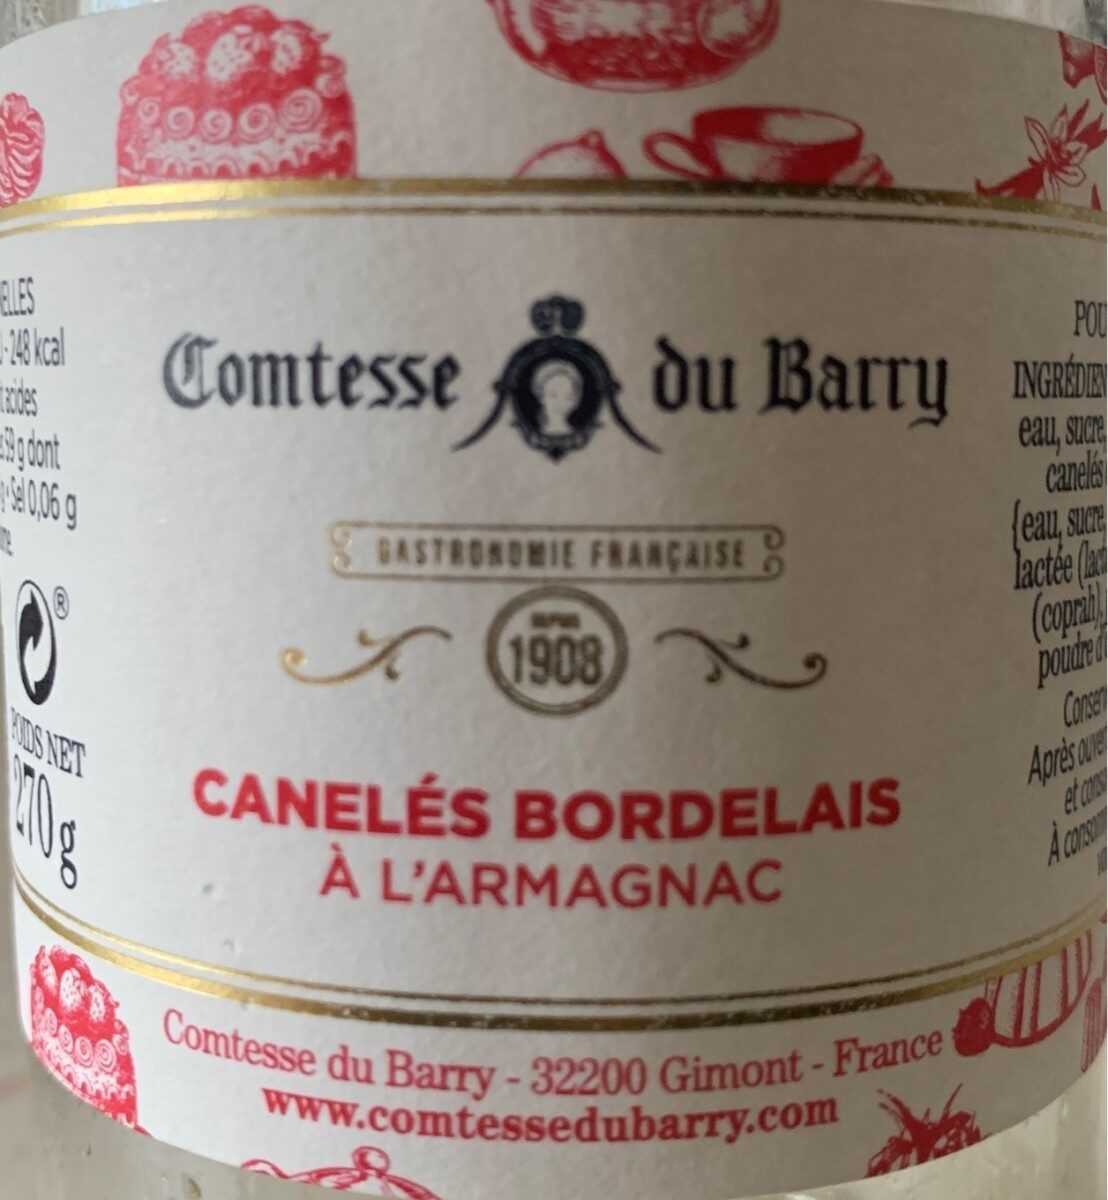 Canelés bordelais à l'armagnac - Produit